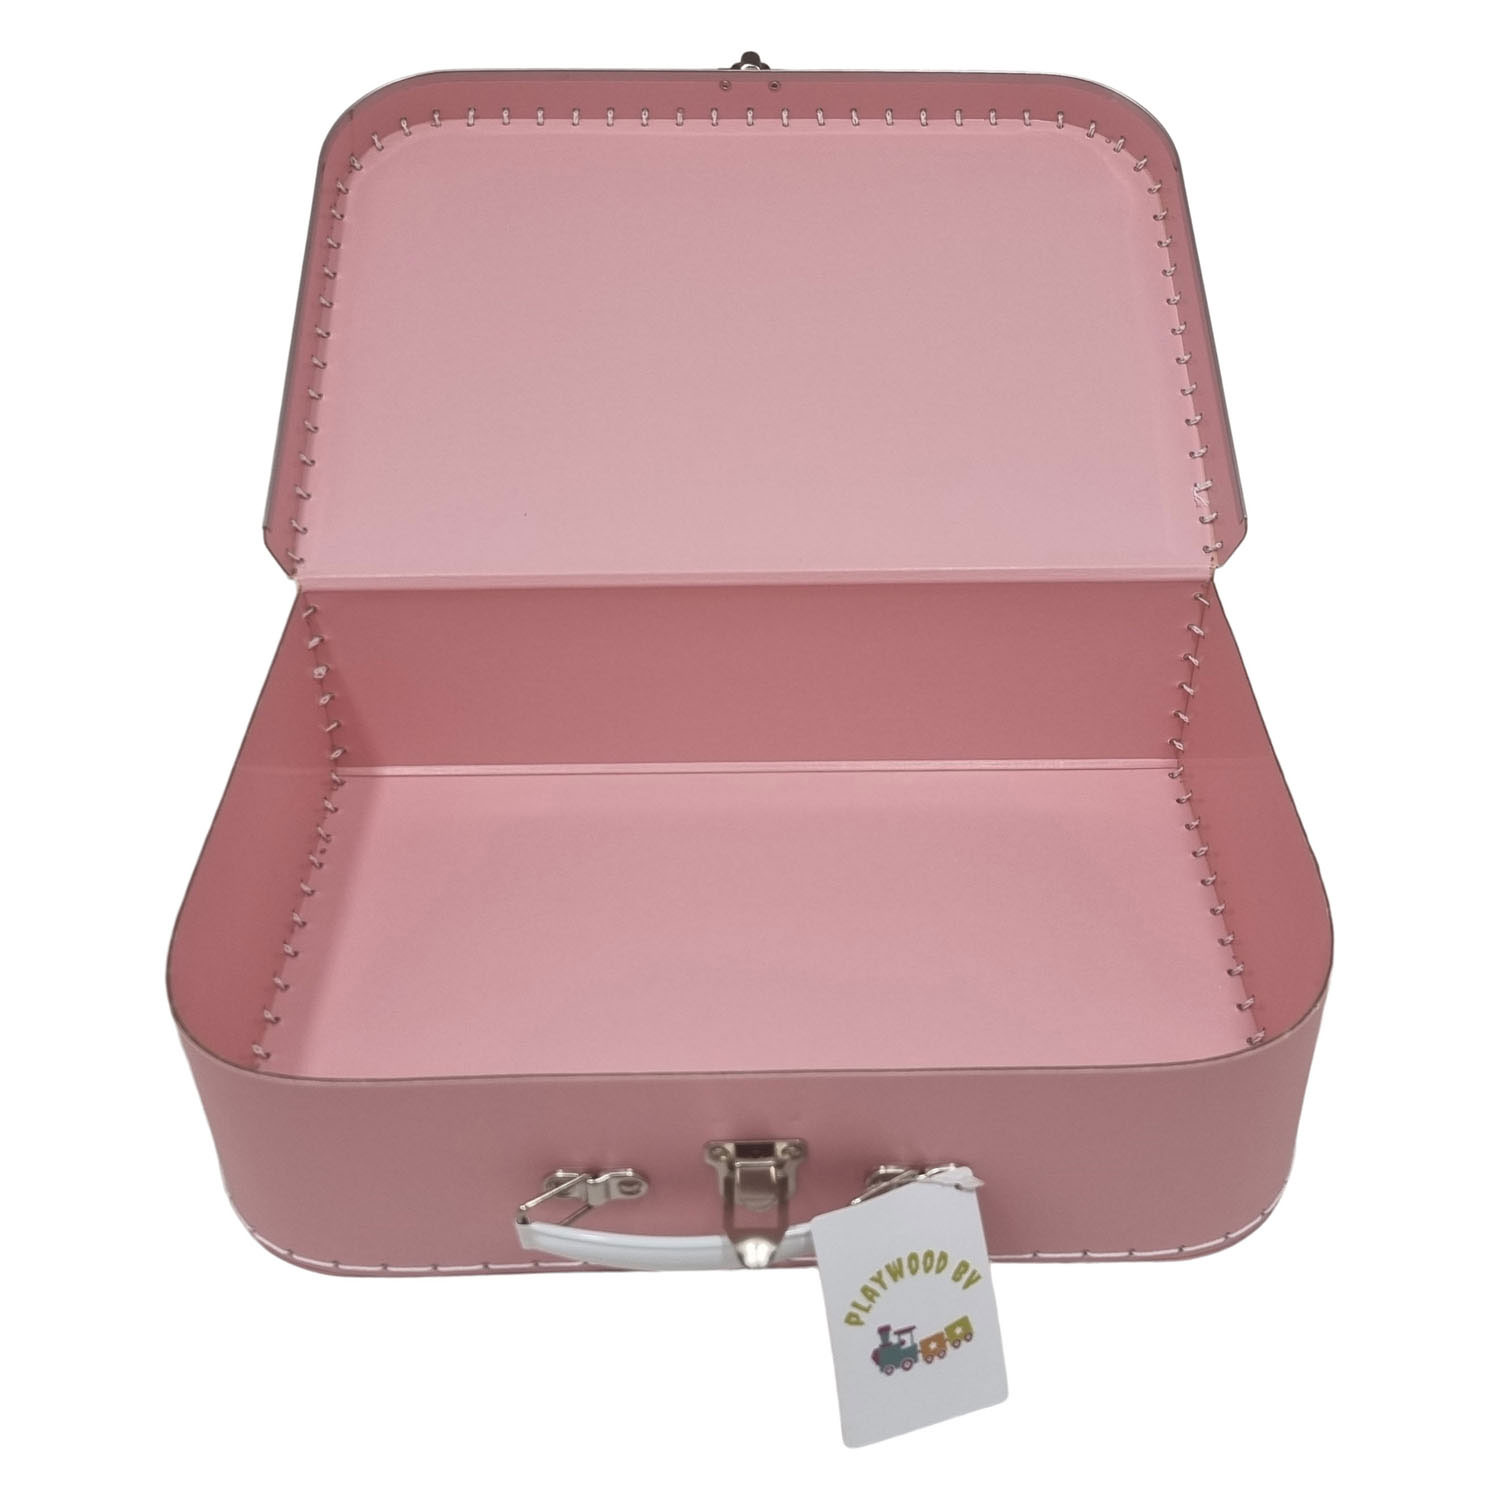 Kartonkoffer-Set Pink, 3tlg.